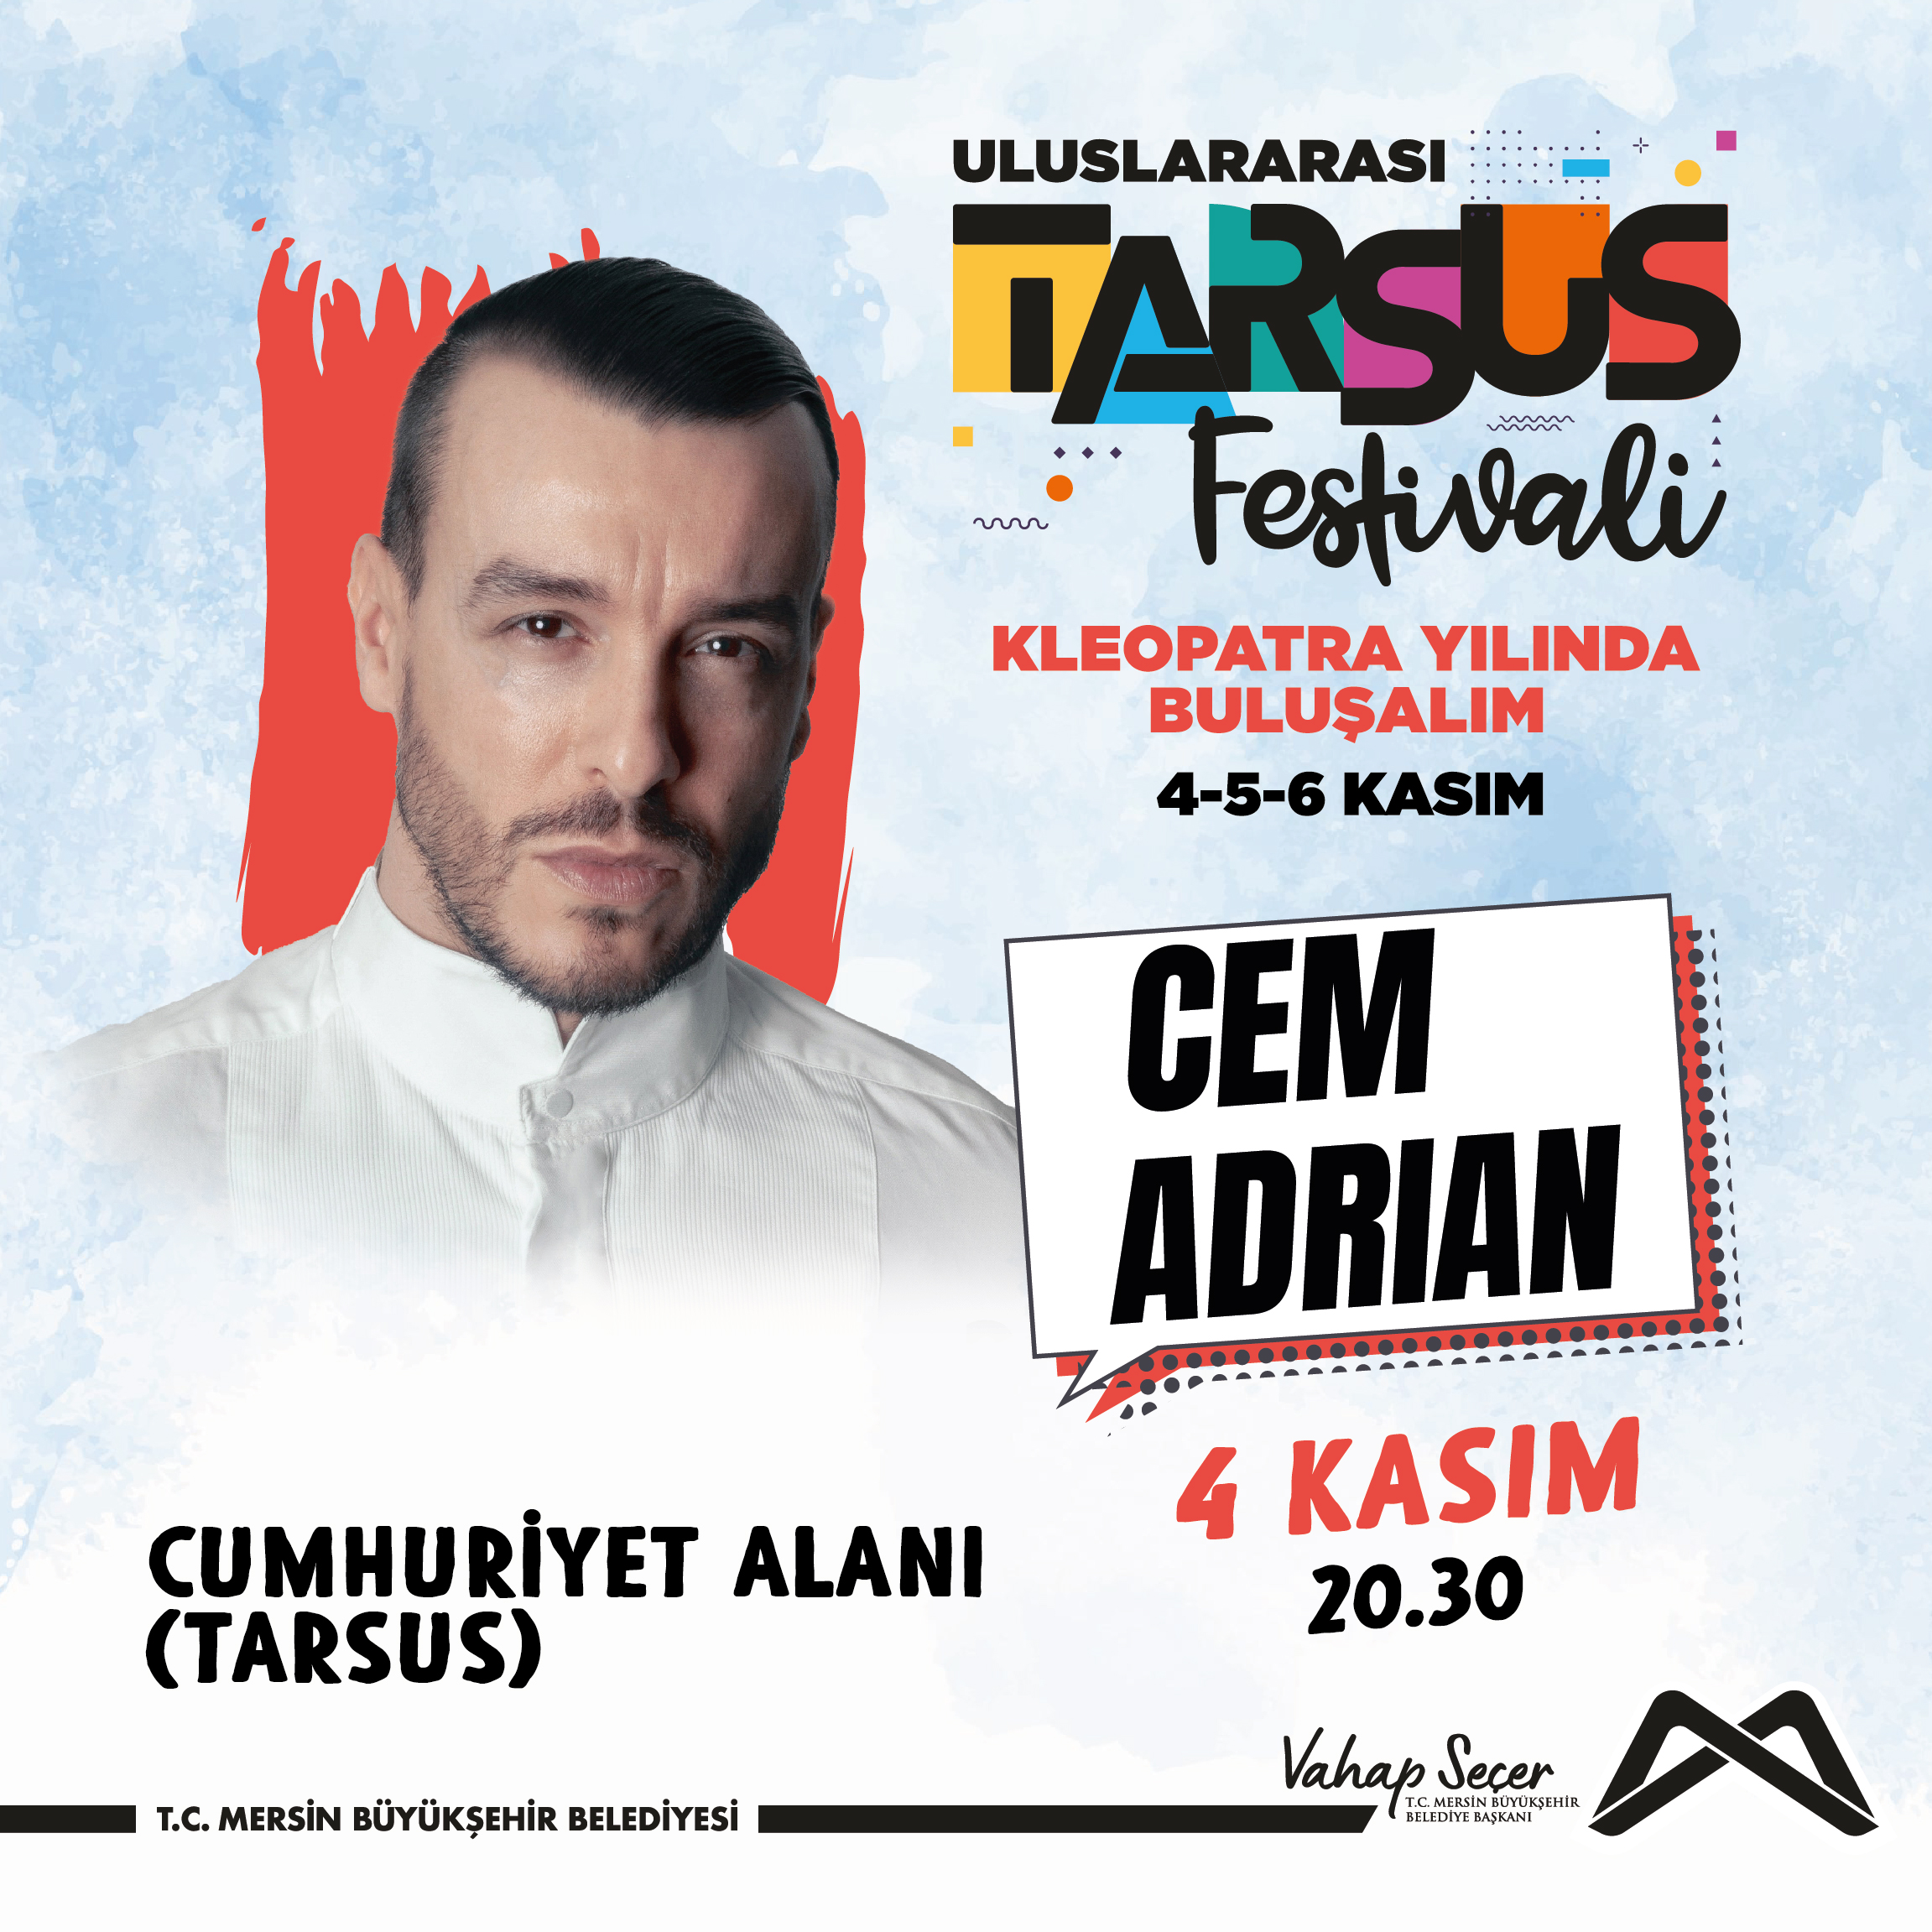 Cem Adrian, Uluslararası Tarsus Festivali'nde şarkılarıyla bizimle olacak!